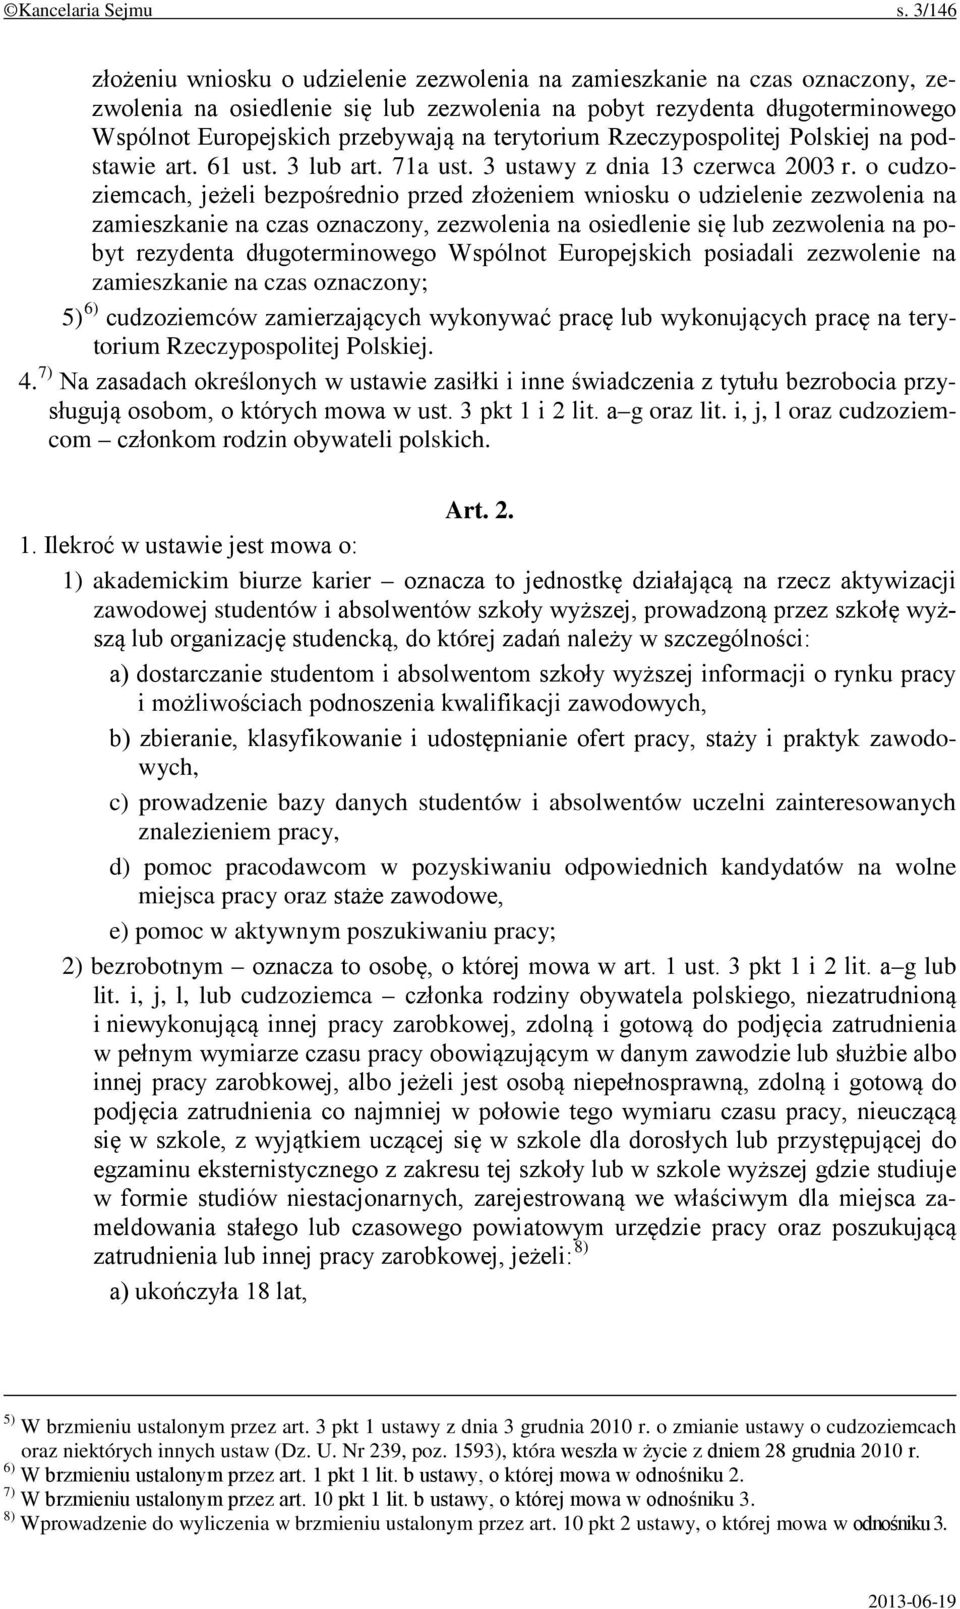 terytorium Rzeczypospolitej Polskiej na podstawie art. 61 ust. 3 lub art. 71a ust. 3 ustawy z dnia 13 czerwca 2003 r.